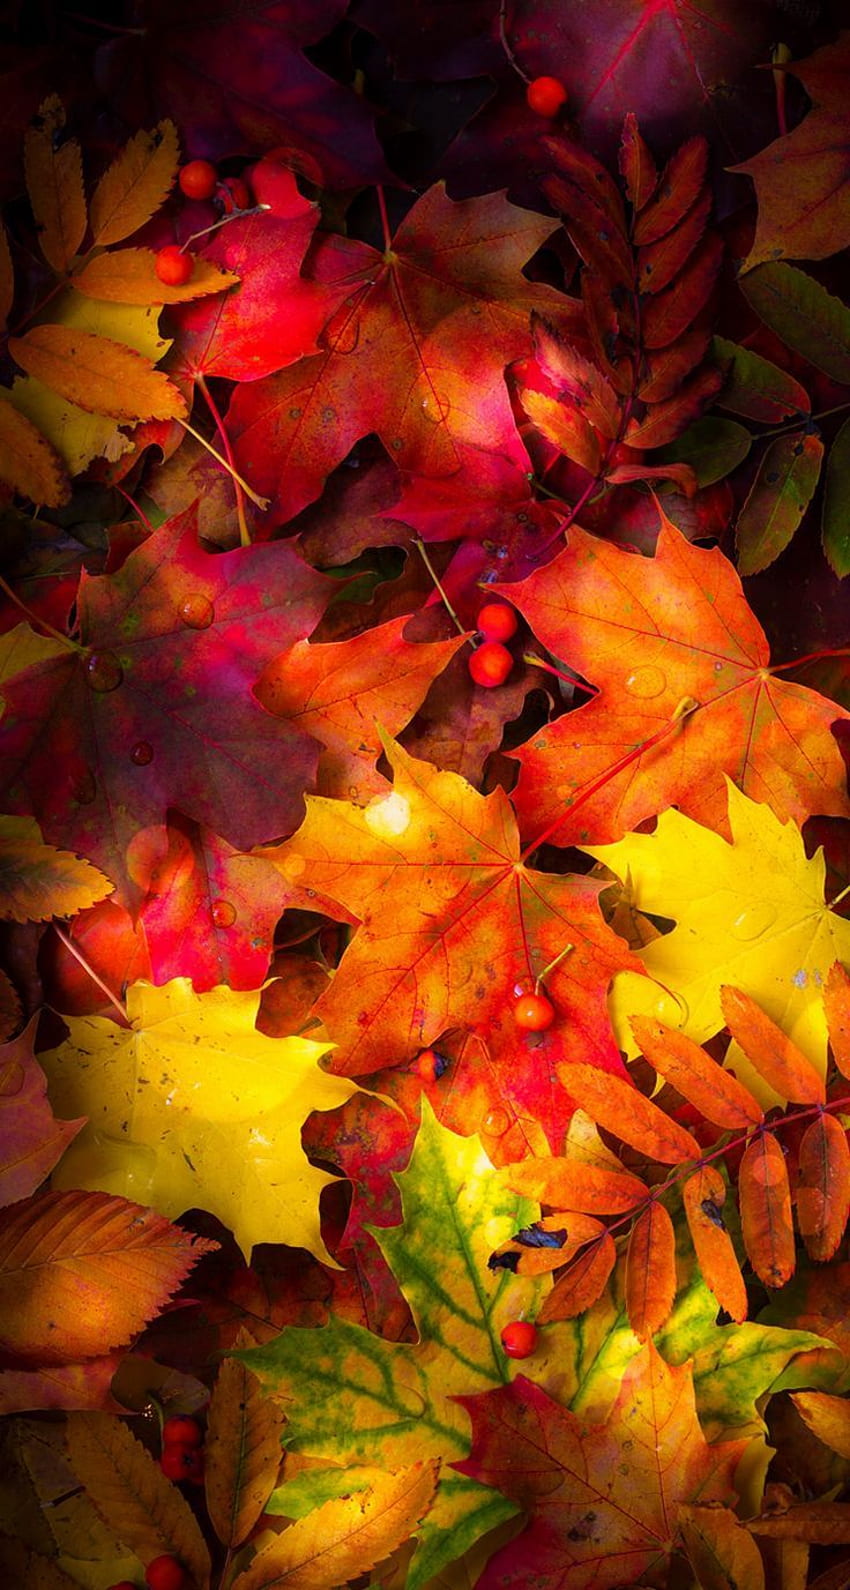 hierba caída del teléfono. Hojas de otoño, Otoño, Paisaje de otoño, Teléfono de hojas de otoño fondo de pantalla del teléfono